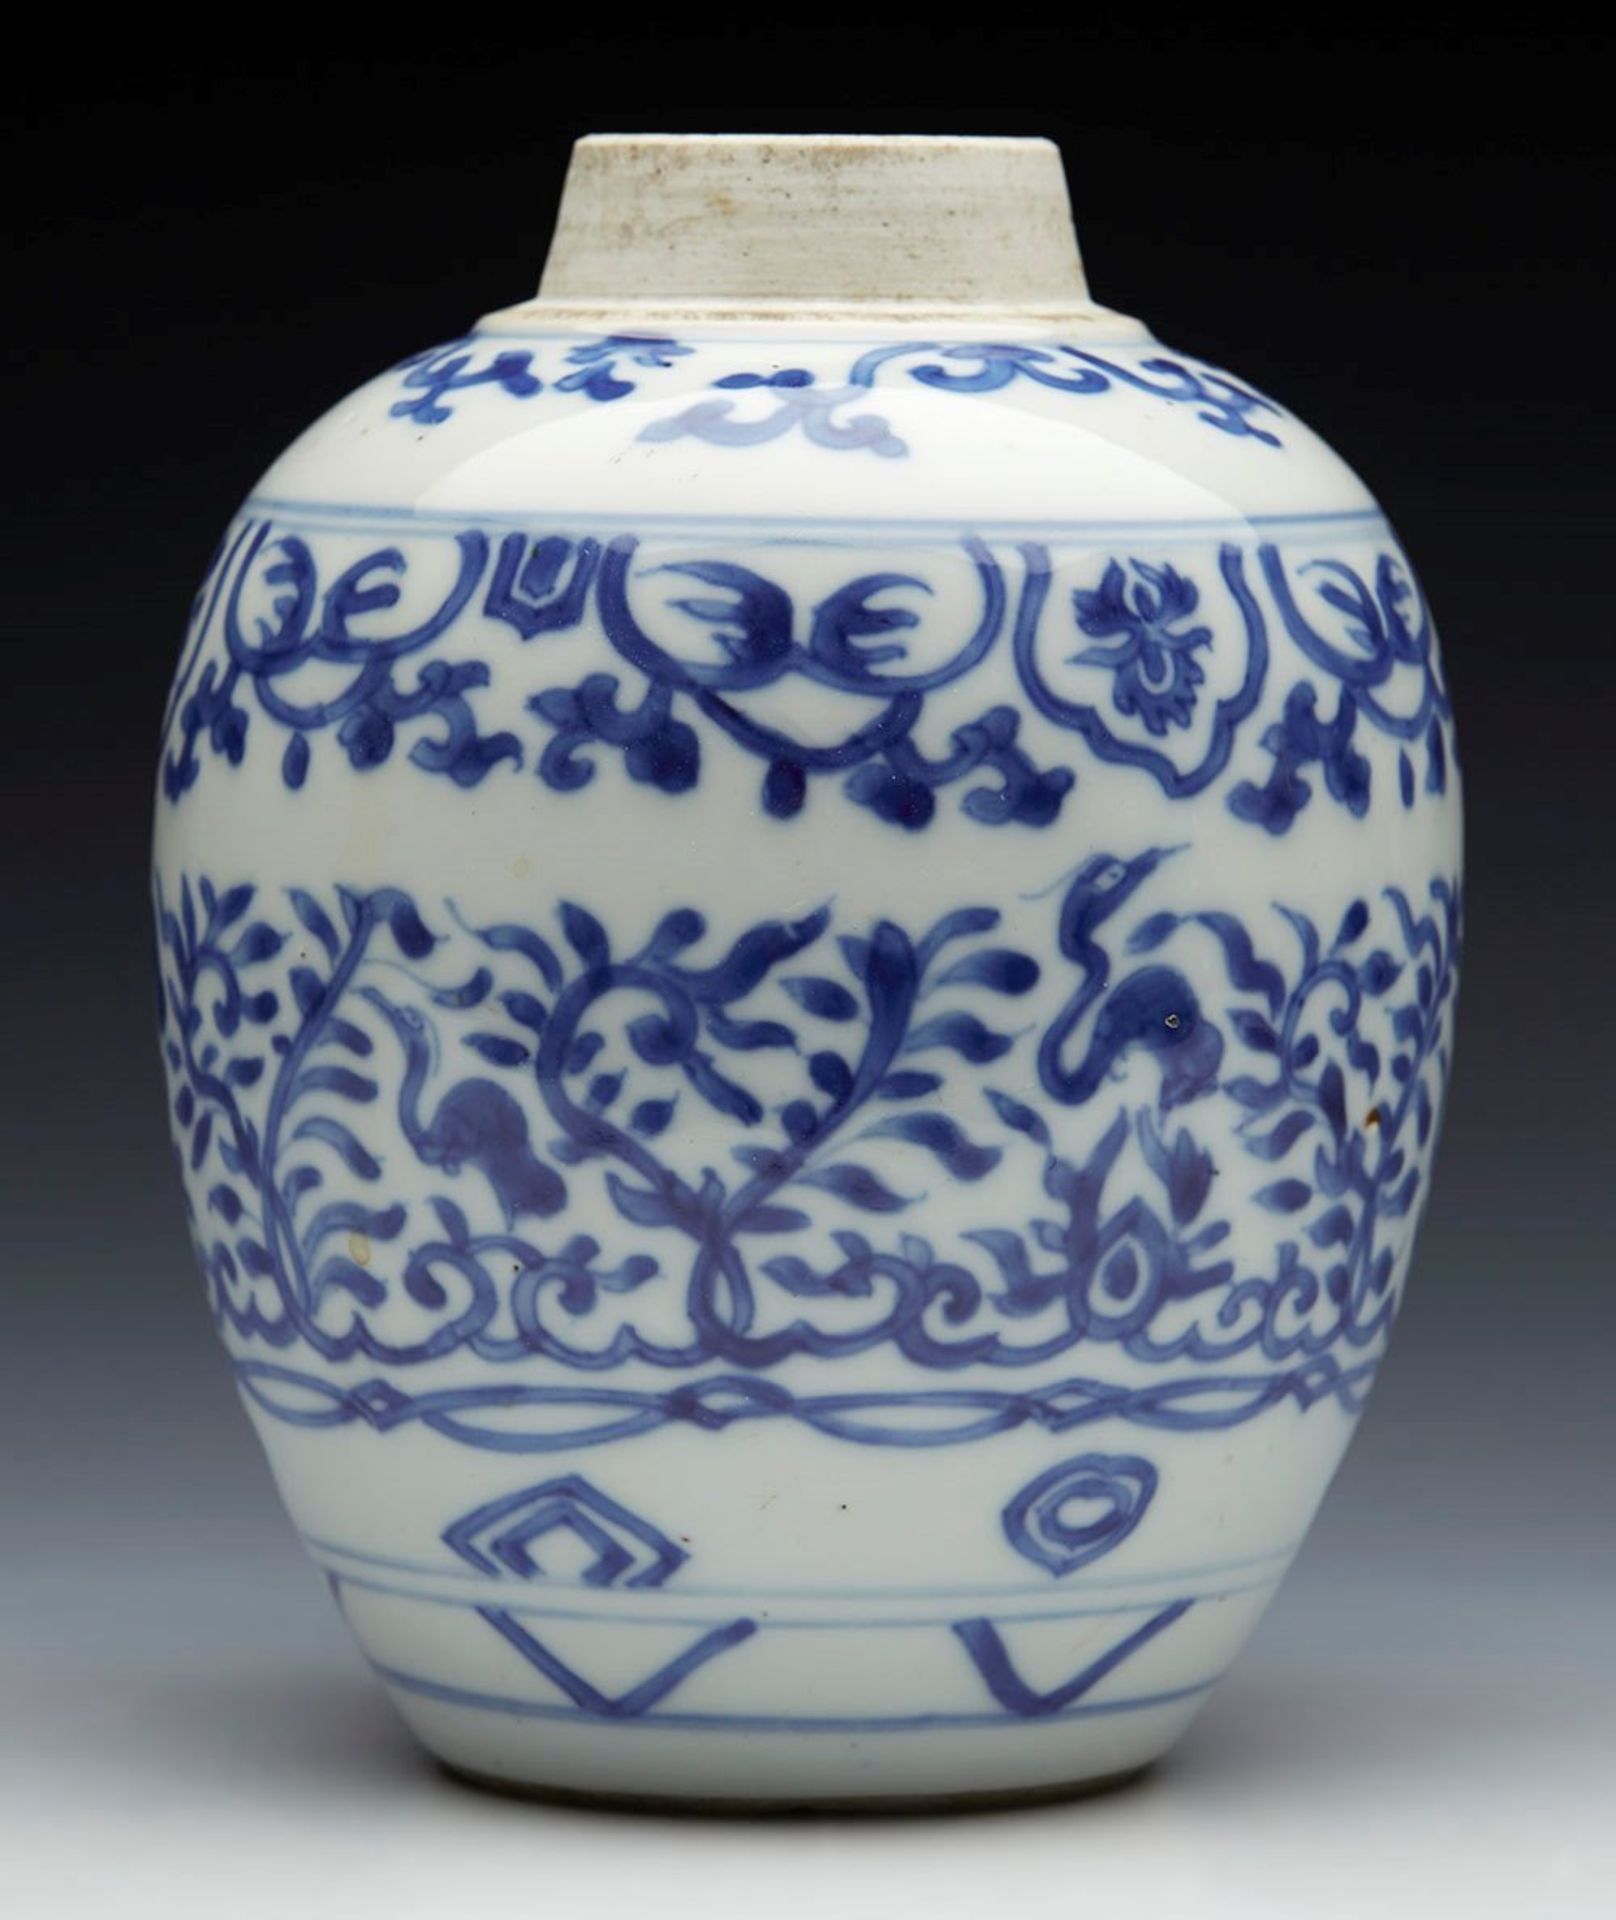 Antique Chinese Kangxi Jar 1662 - 1722